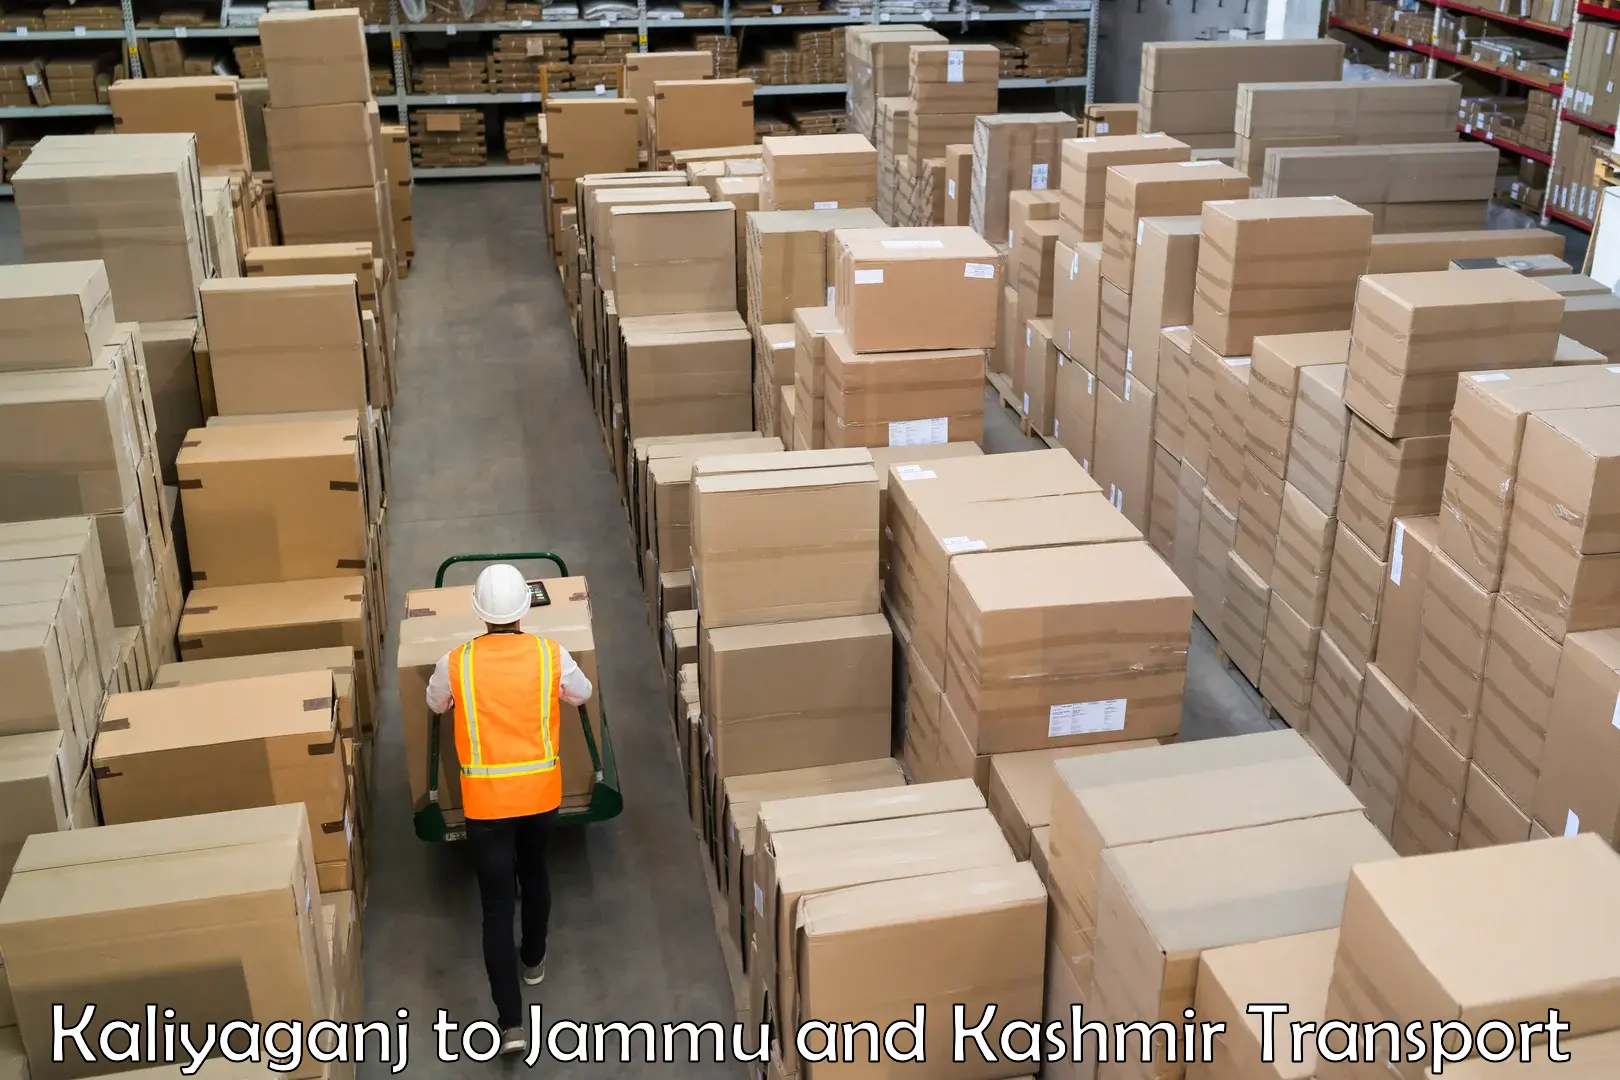 Cargo transport services Kaliyaganj to Jammu and Kashmir